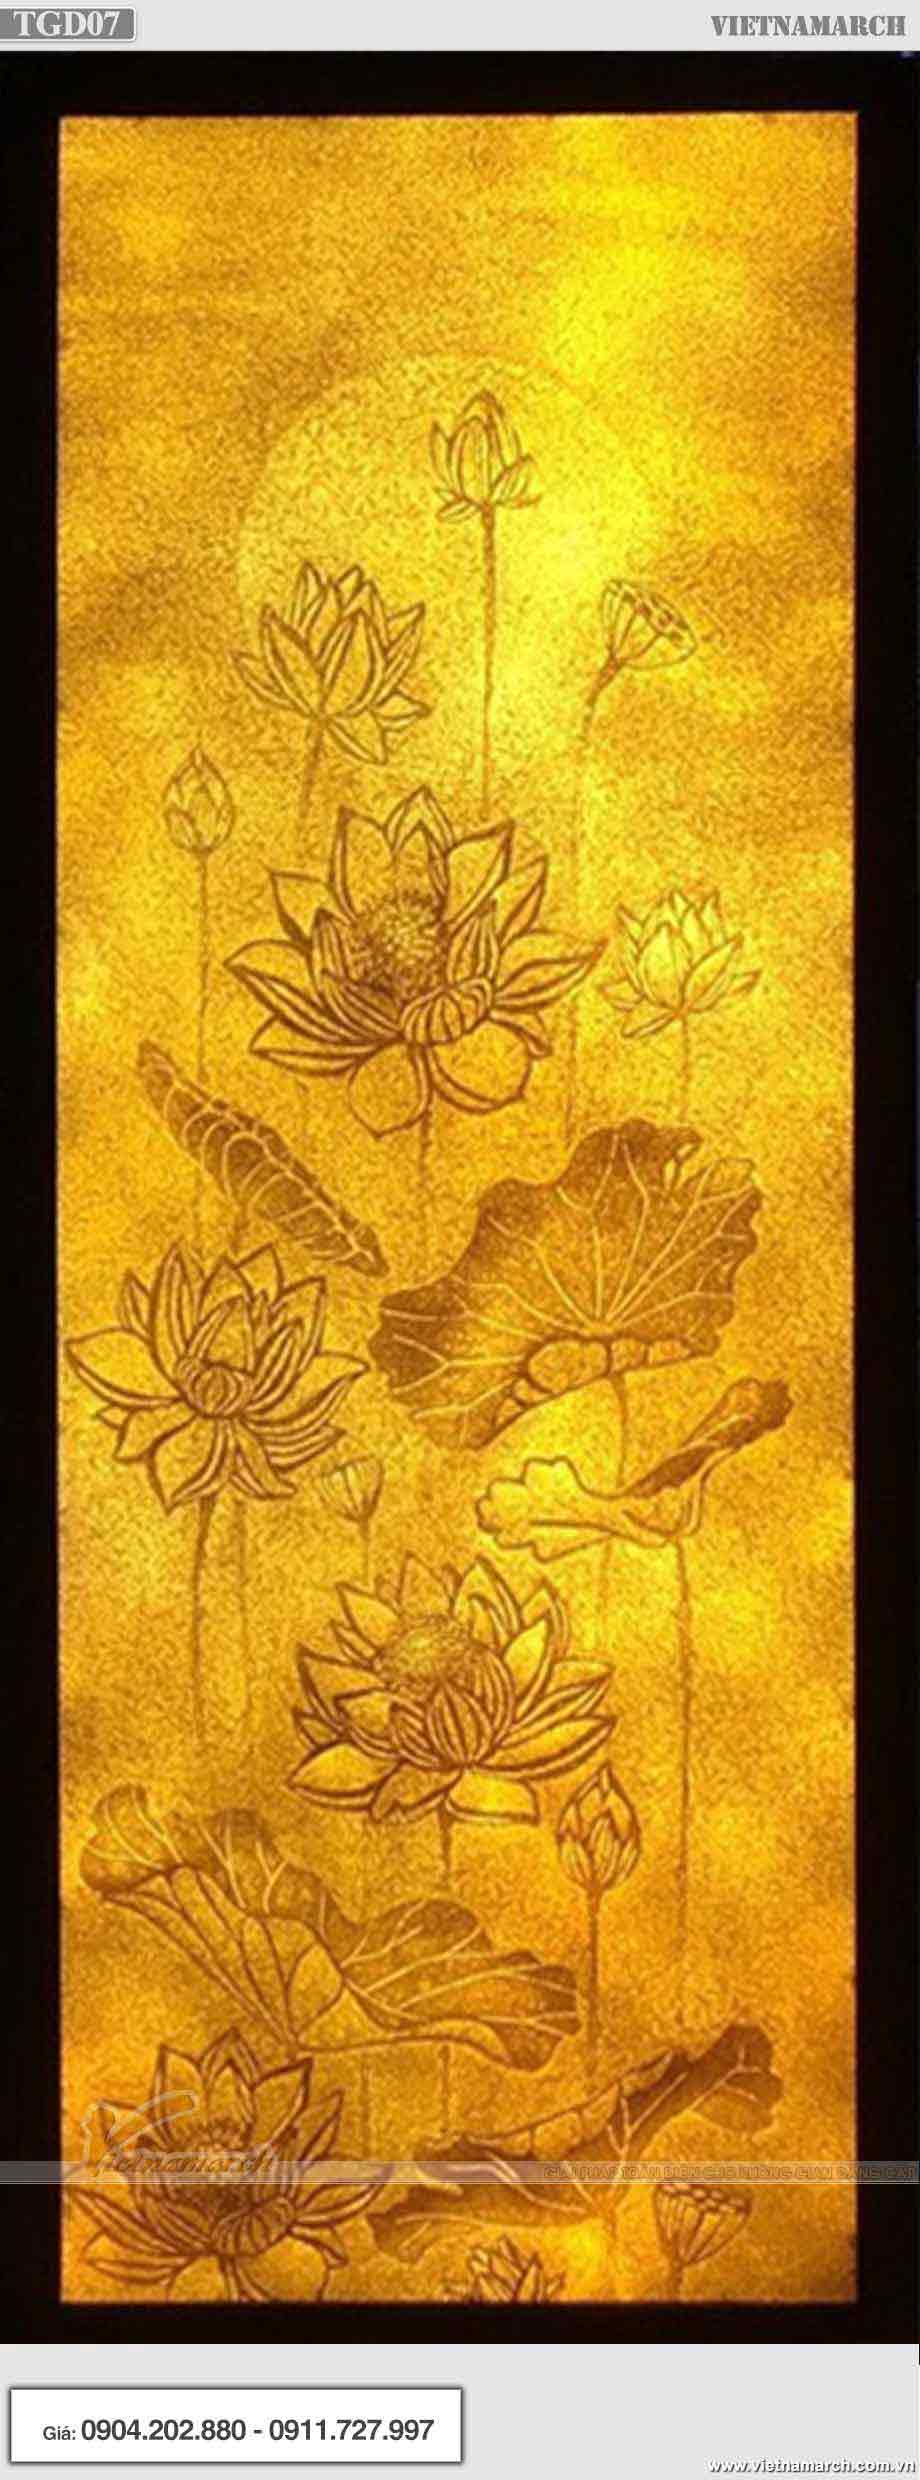 Mẫu tranh giấy dừa hoa sen hình chữ nhật - TGD07